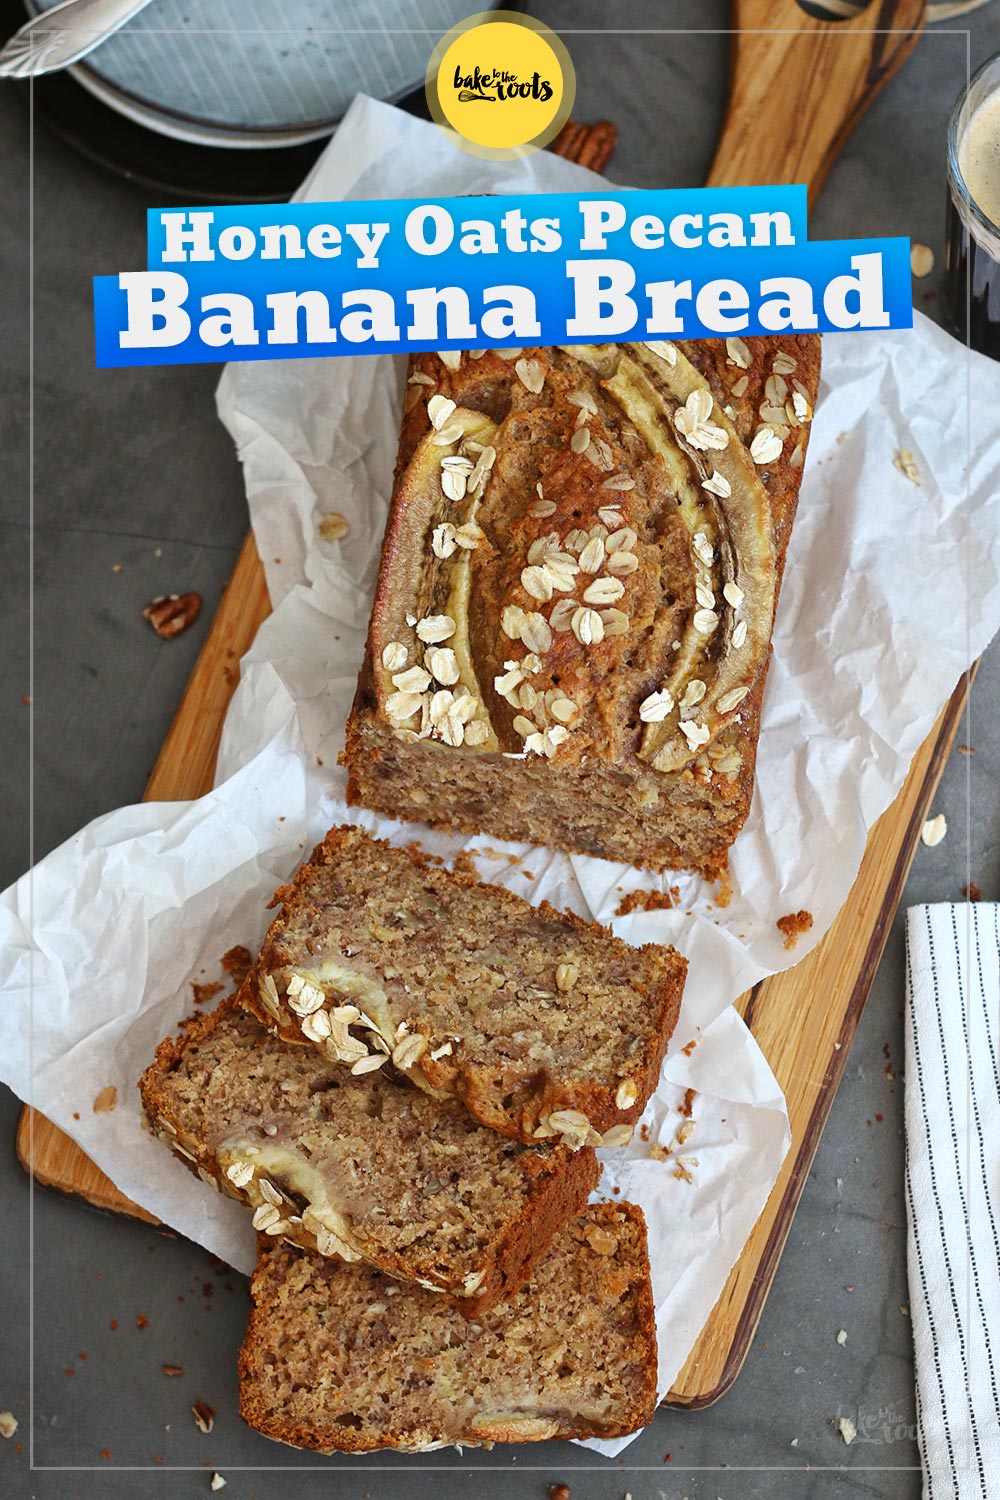 Honey Oats & Pecan Banana Bread | Bake to the roots